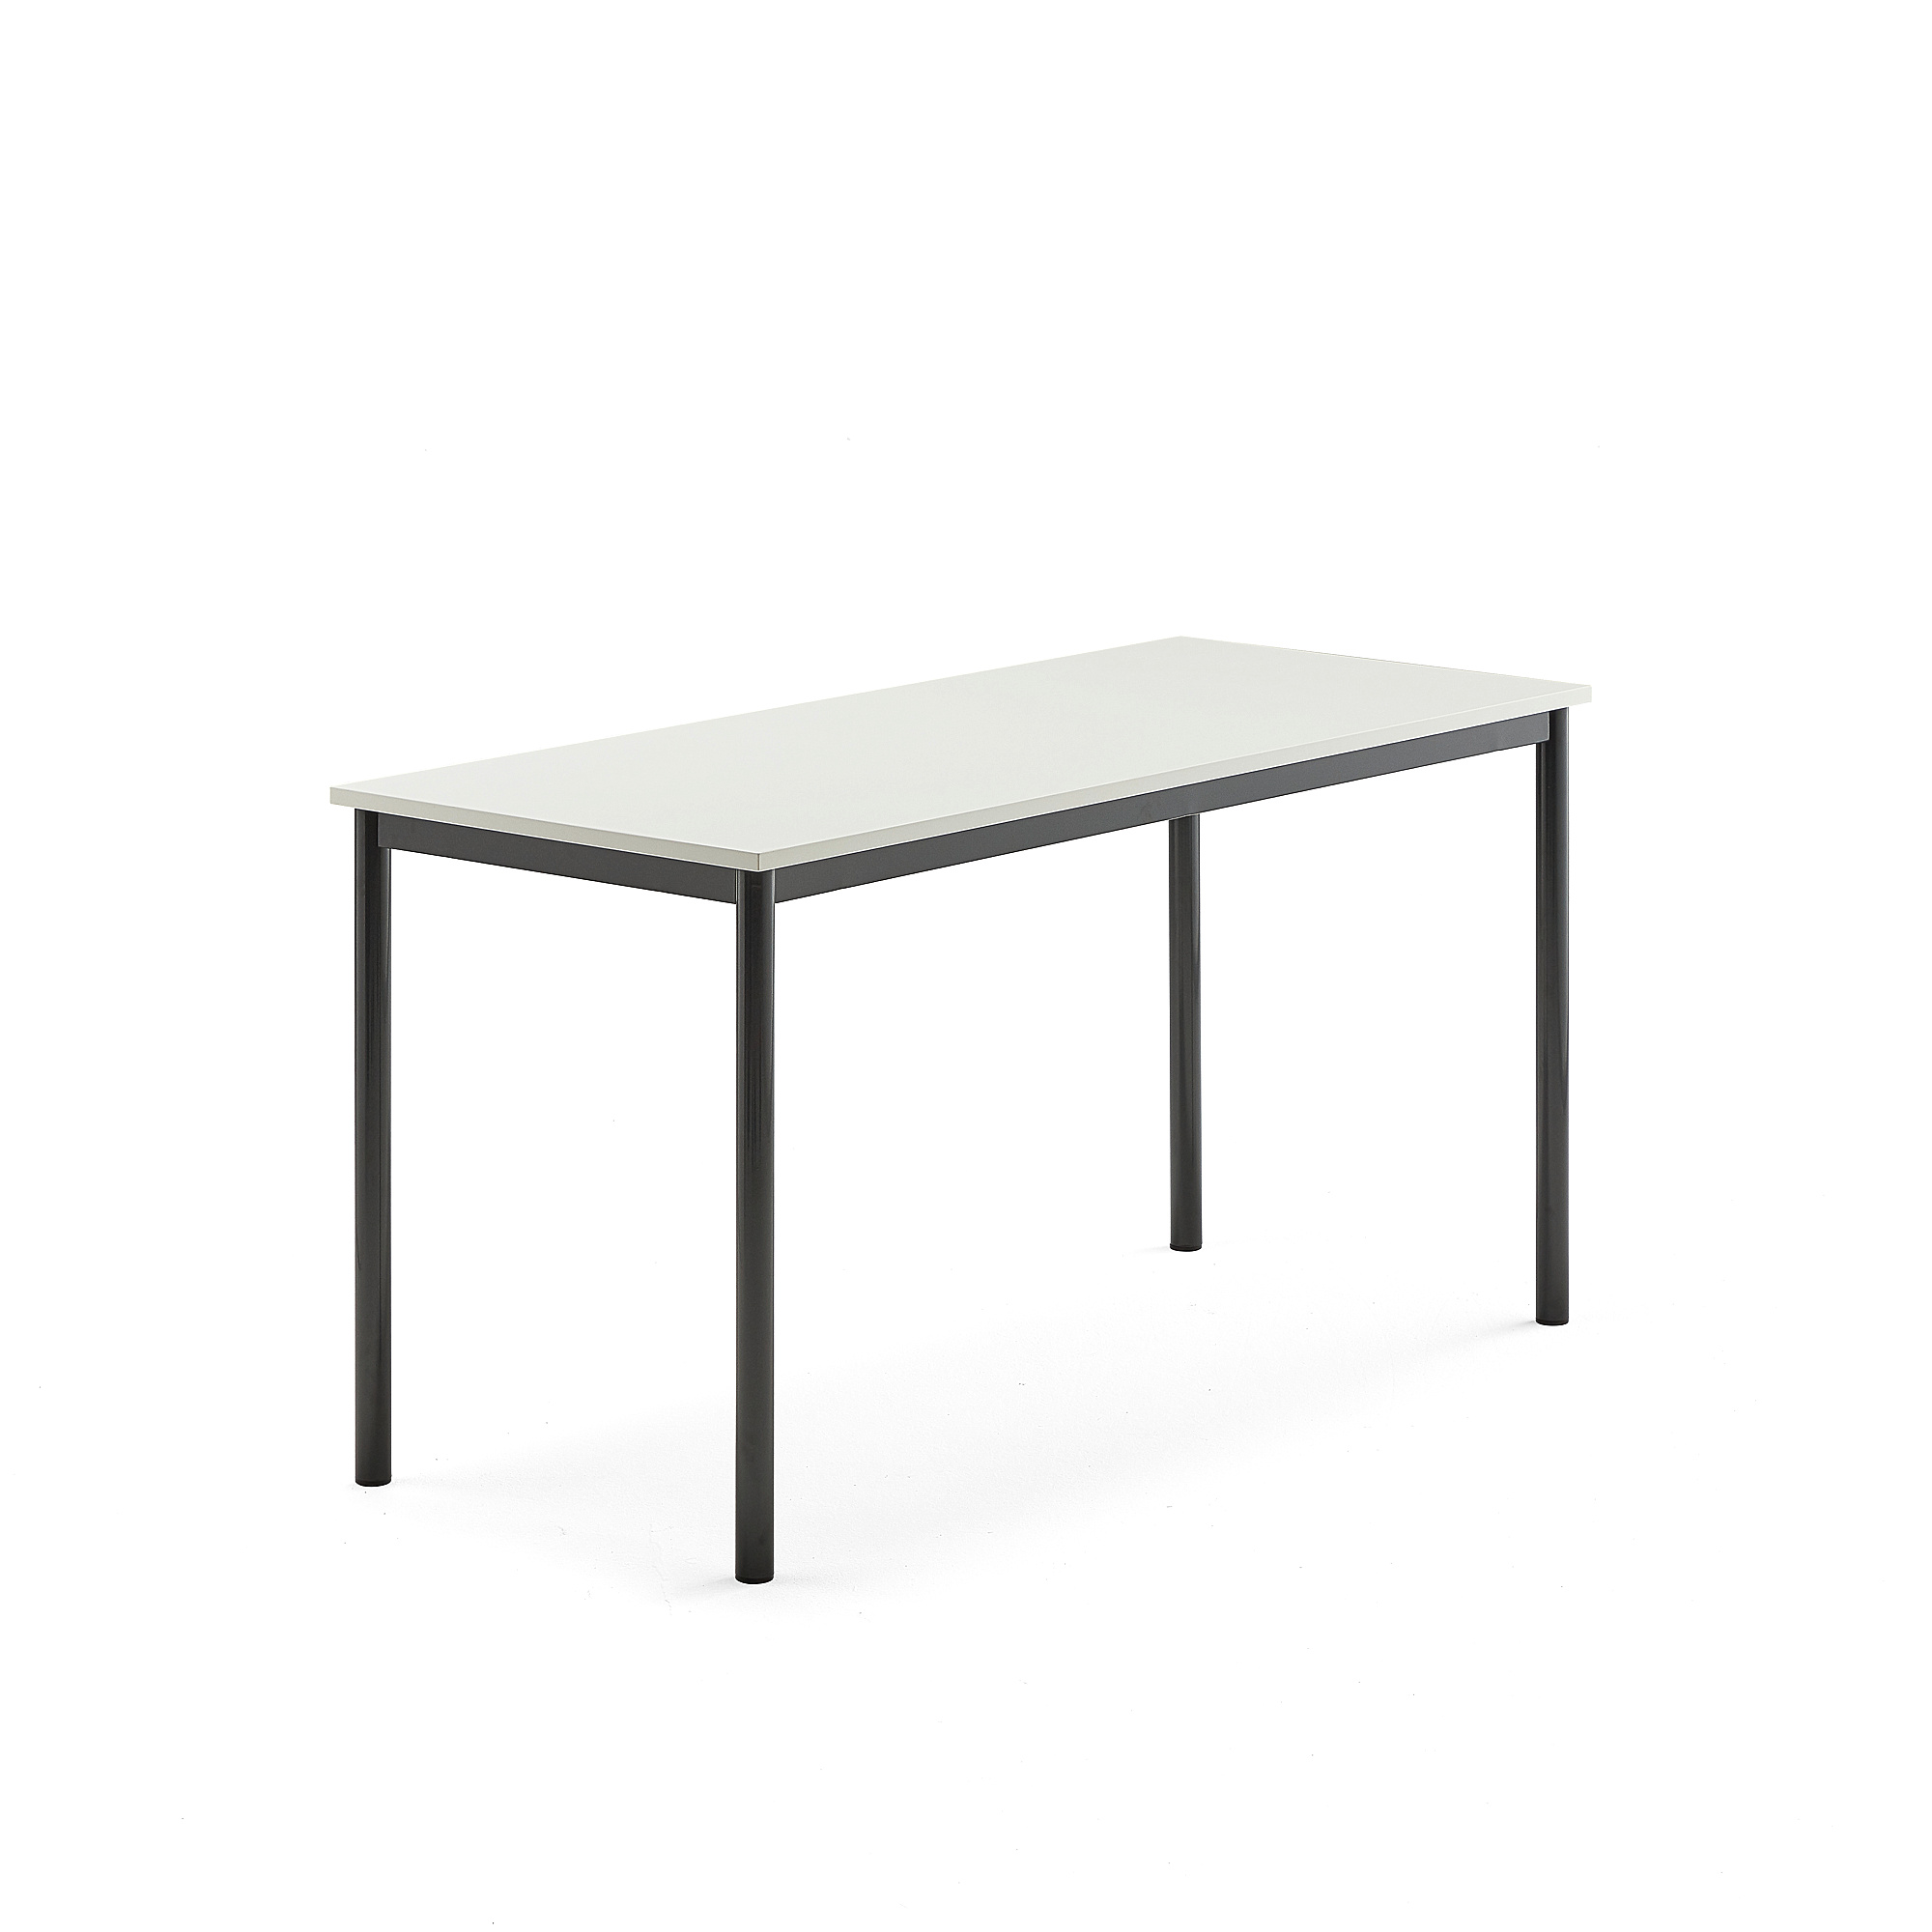 Stůl SONITUS, 1400x600x720 mm, antracitově šedé nohy, HPL deska tlumící hluk, bílá